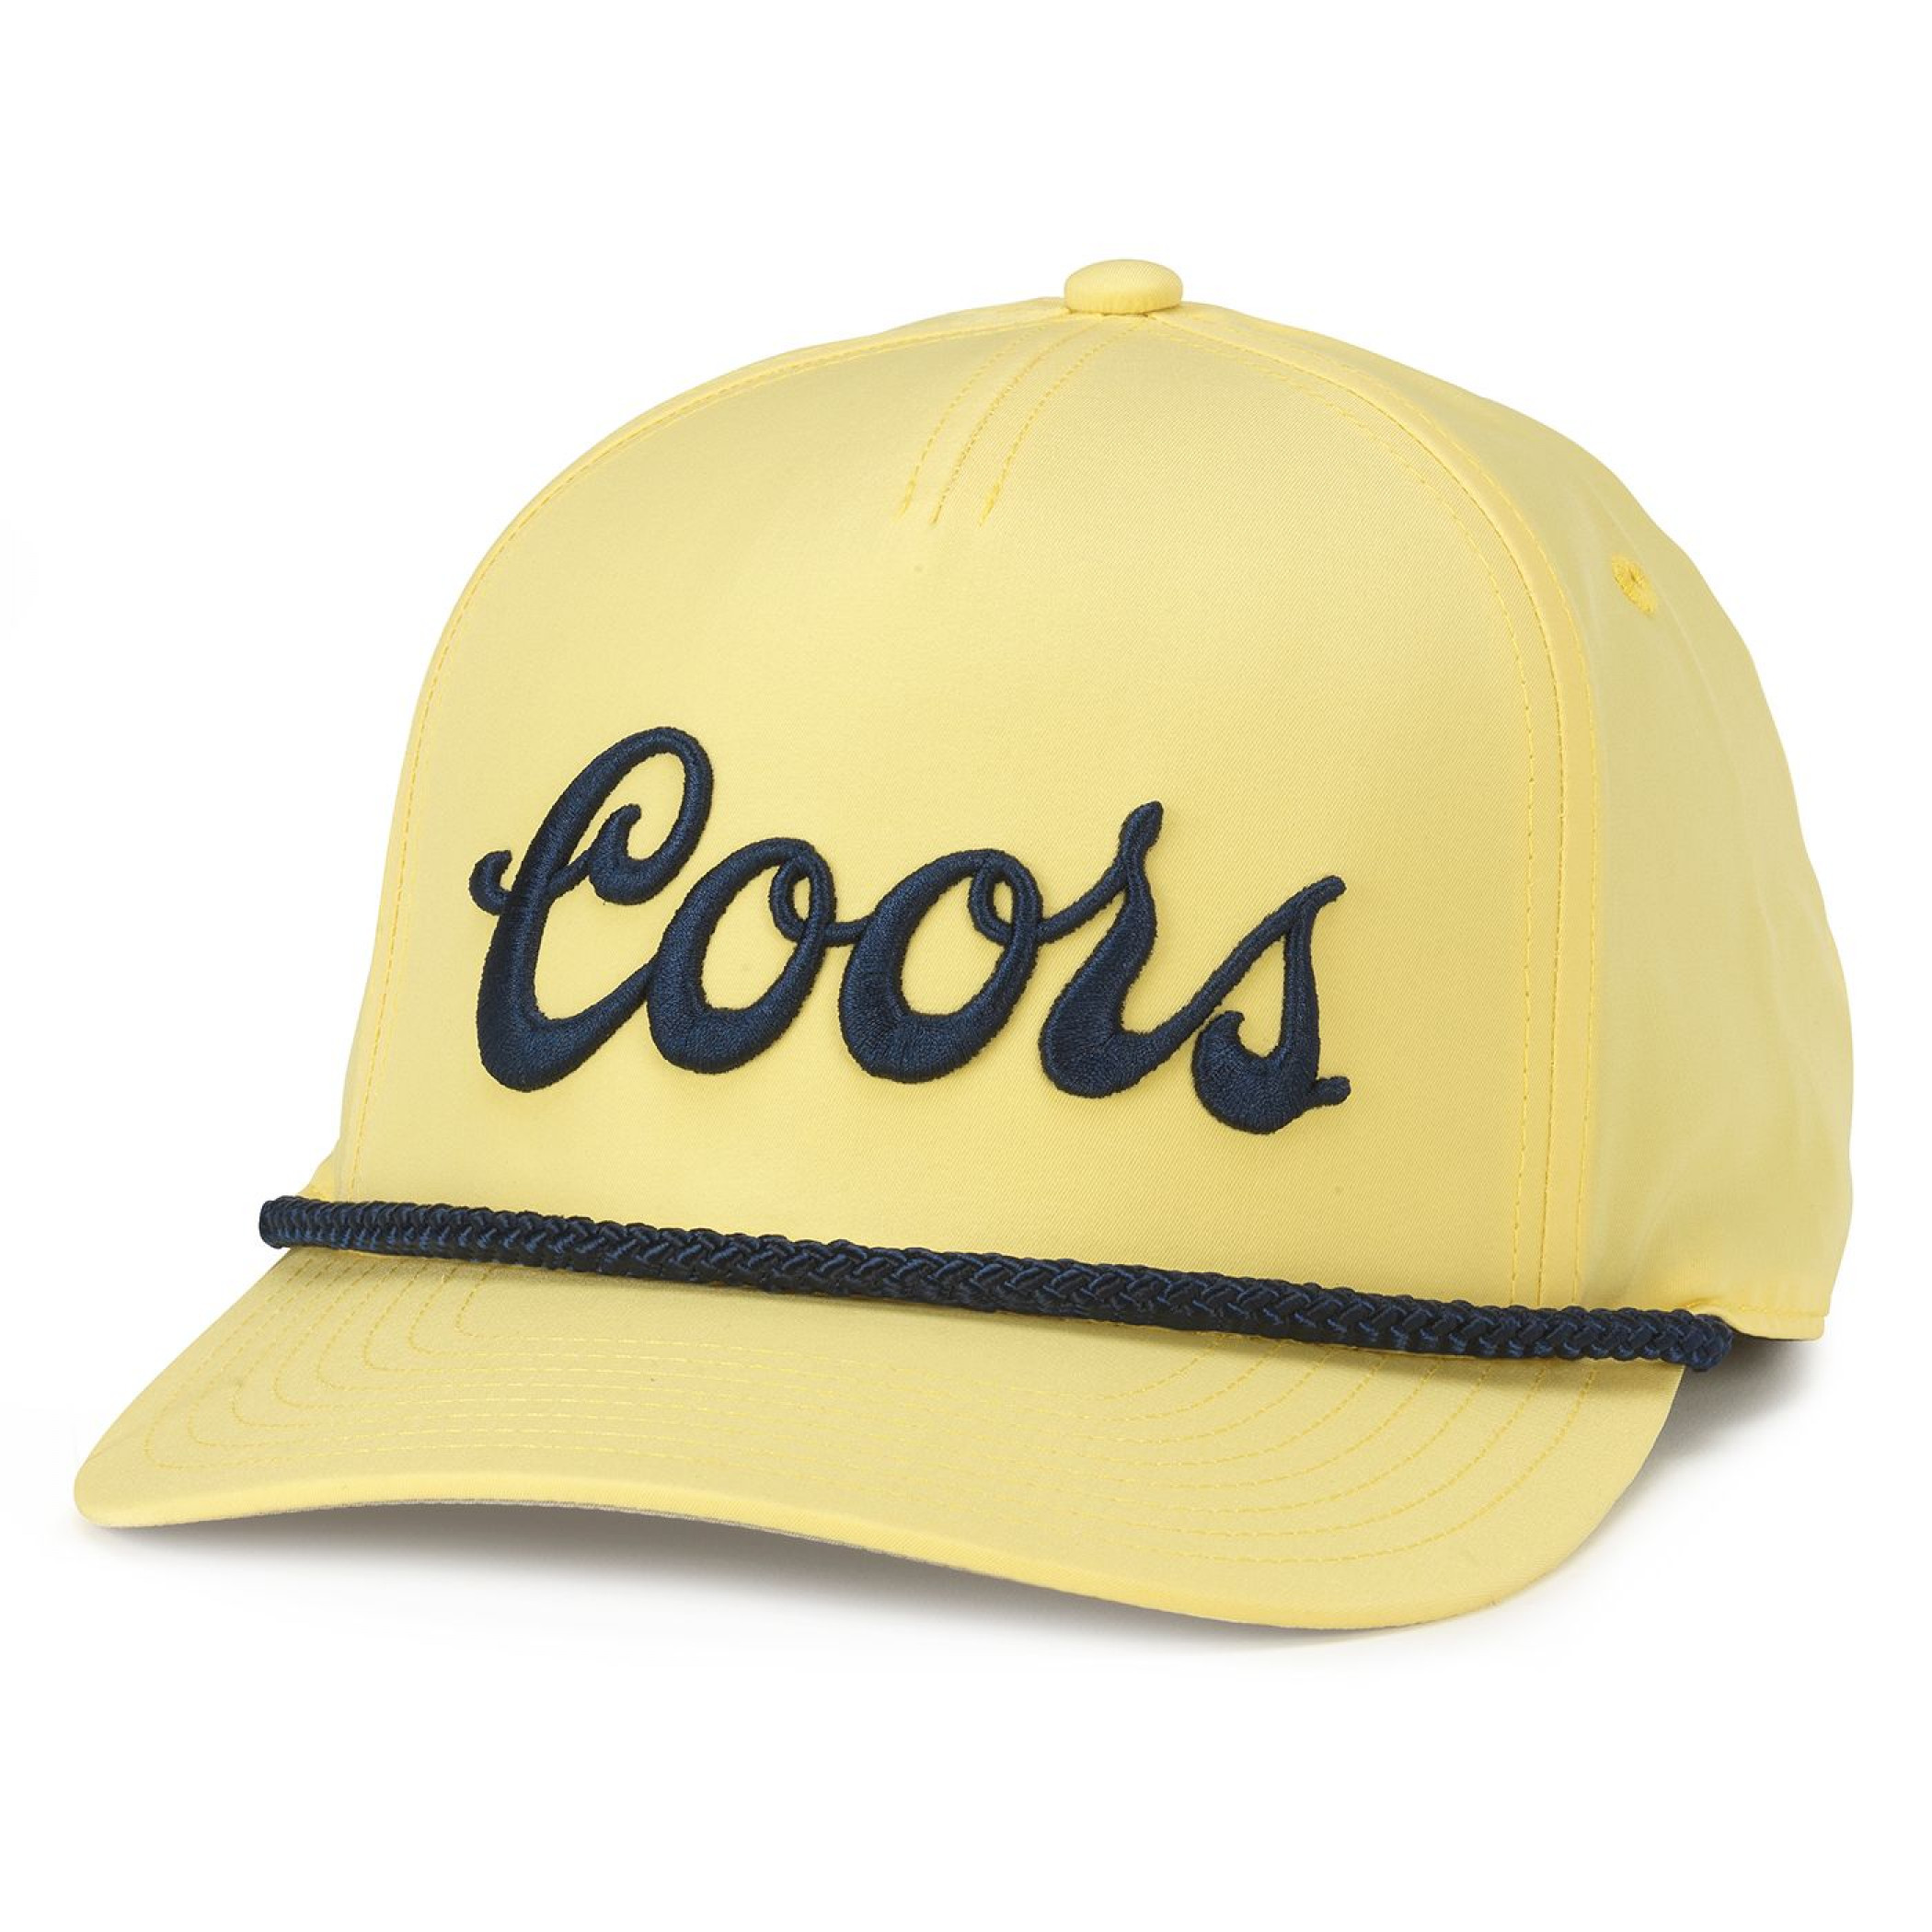 Coors Embroidered Logo Traveler Adjustable Hat